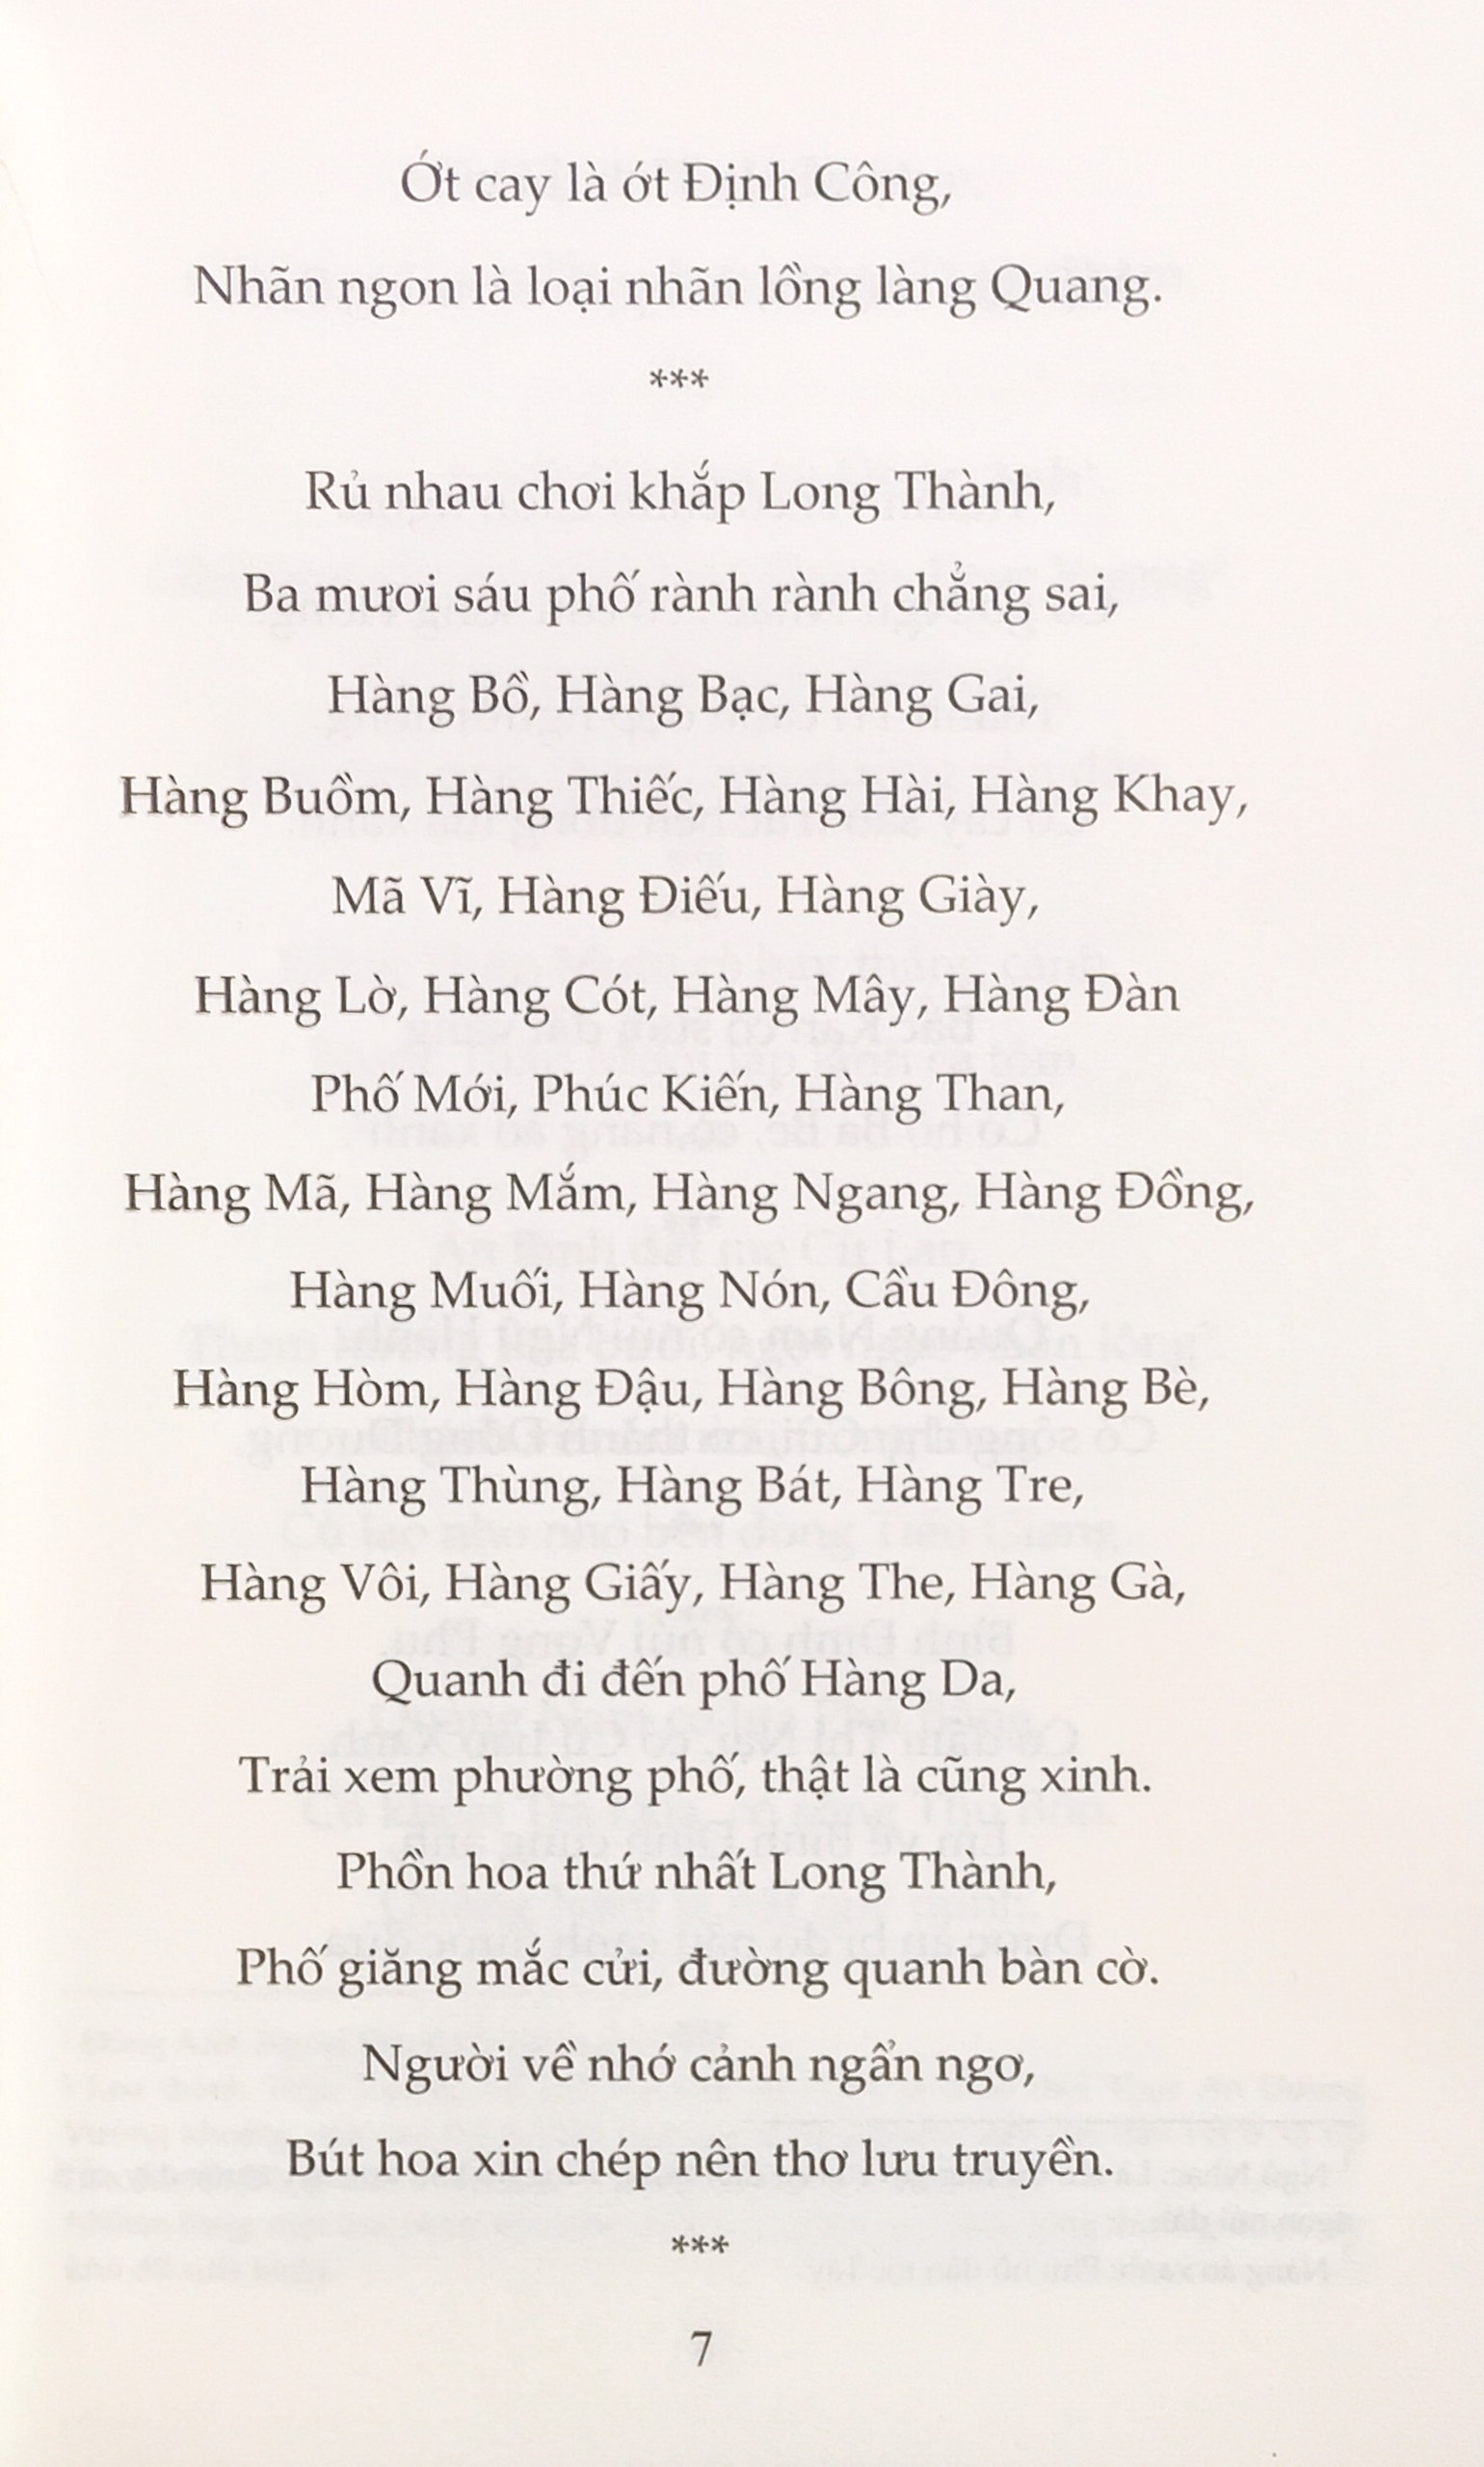 Tục Ngữ Ca Dao Việt Nam. Nói Về Mọi Mặt Của Cuộc Sống: Sinh Hoạt, Văn Hóa, Lao Động Nghề Nghiệp, Kinh Nghiệm Sống…